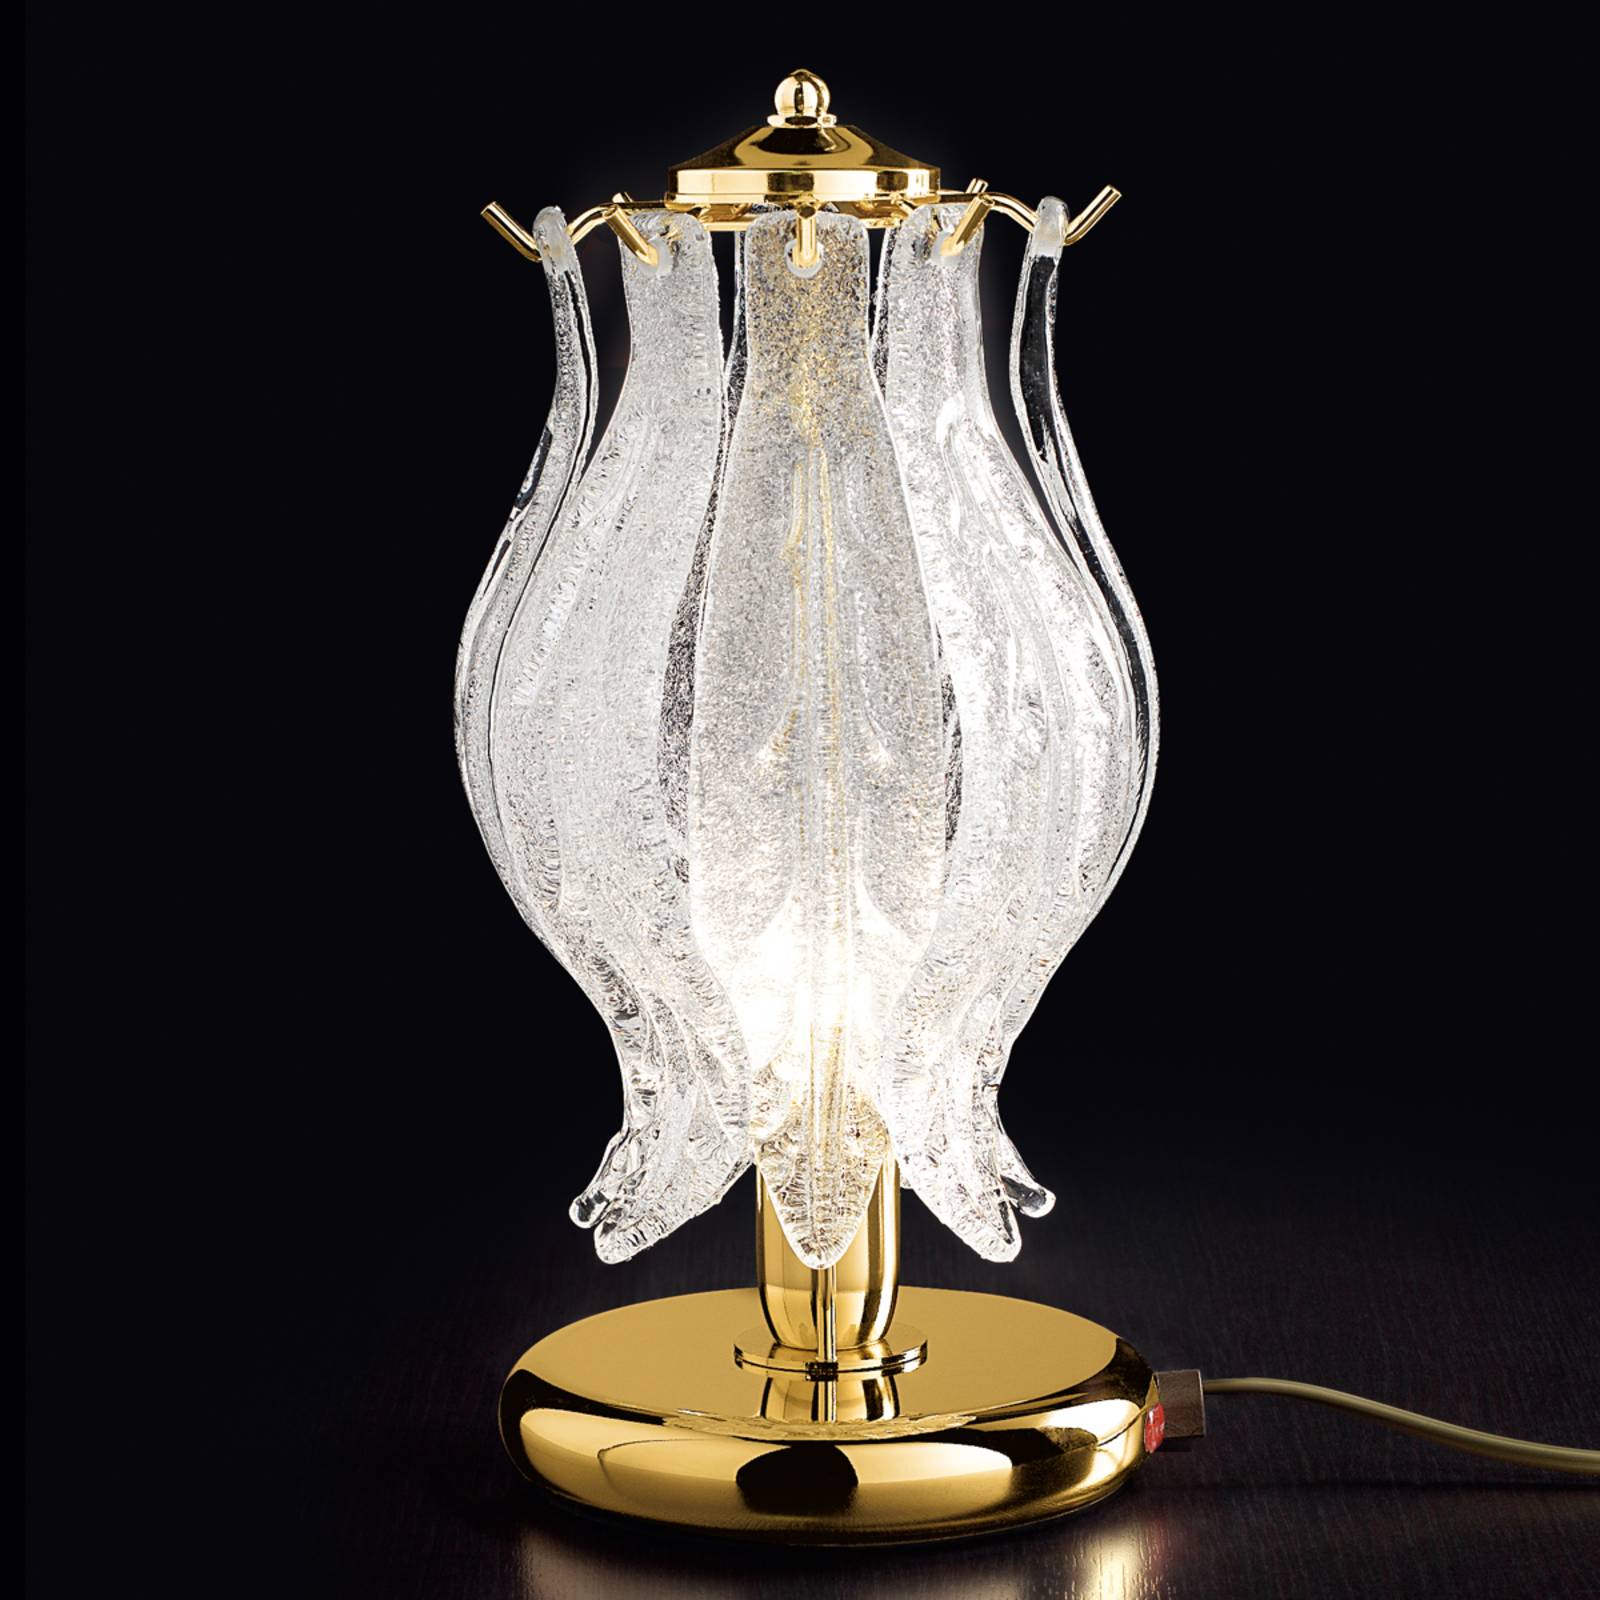 Patrizia volpato petali asztali lámpa muránói üveggel 31 cm